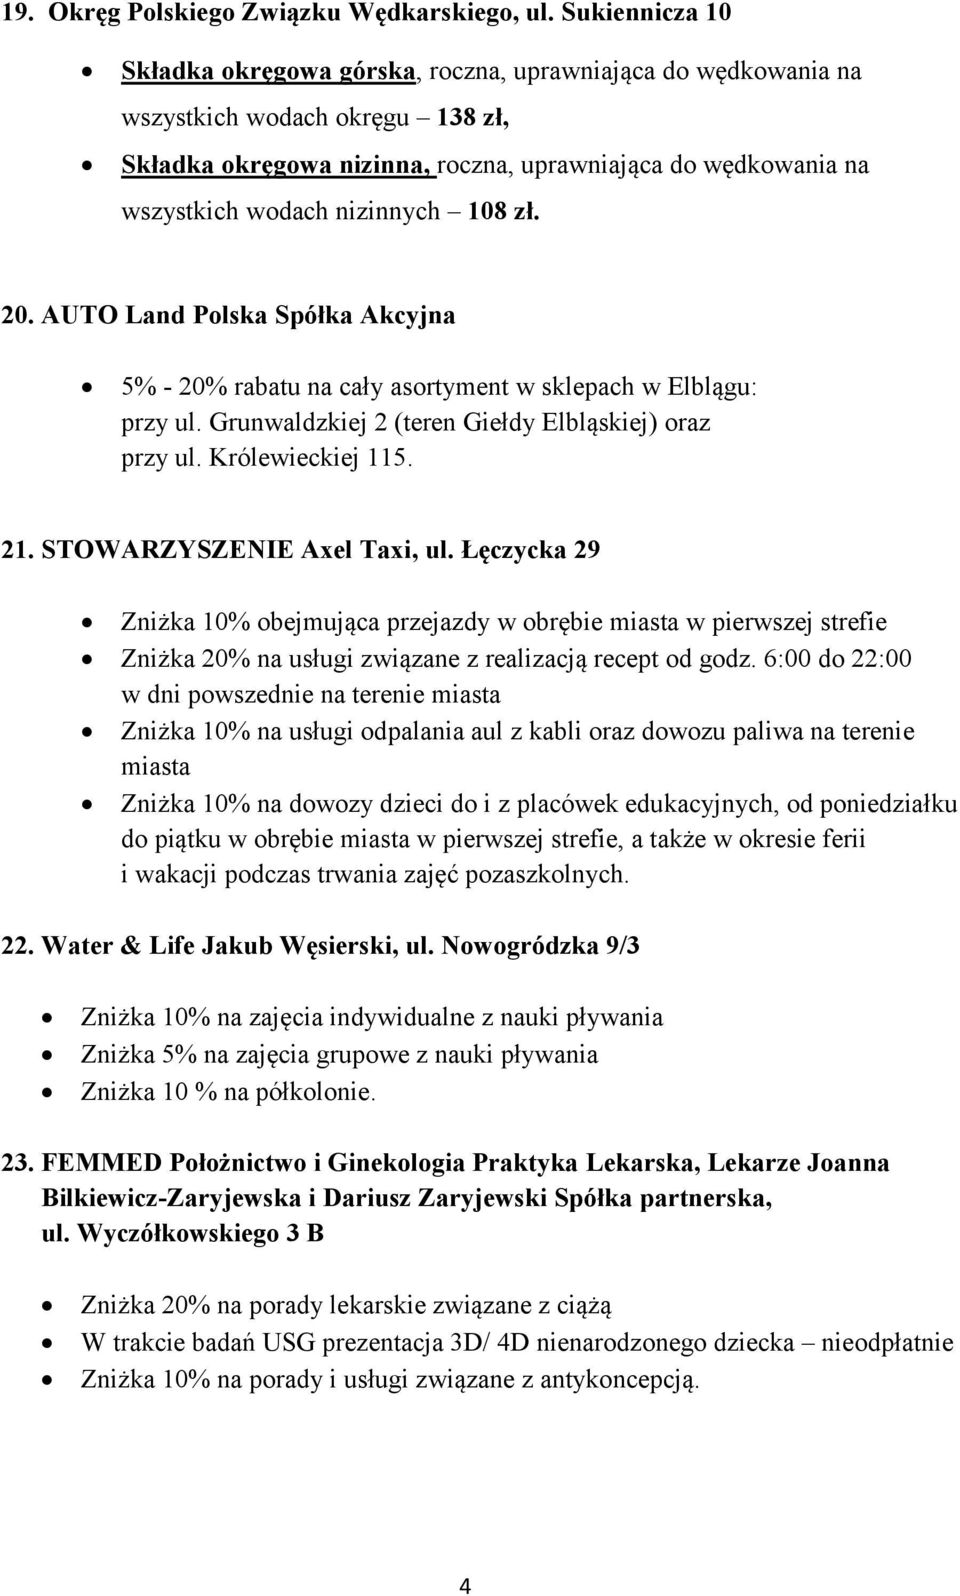 nizinnych 108 zł. 20. AUTO Land Polska Spółka Akcyjna 5% - 20% rabatu na cały asortyment w sklepach w Elblągu: przy ul. Grunwaldzkiej 2 (teren Giełdy Elbląskiej) oraz przy ul. Królewieckiej 115. 21.